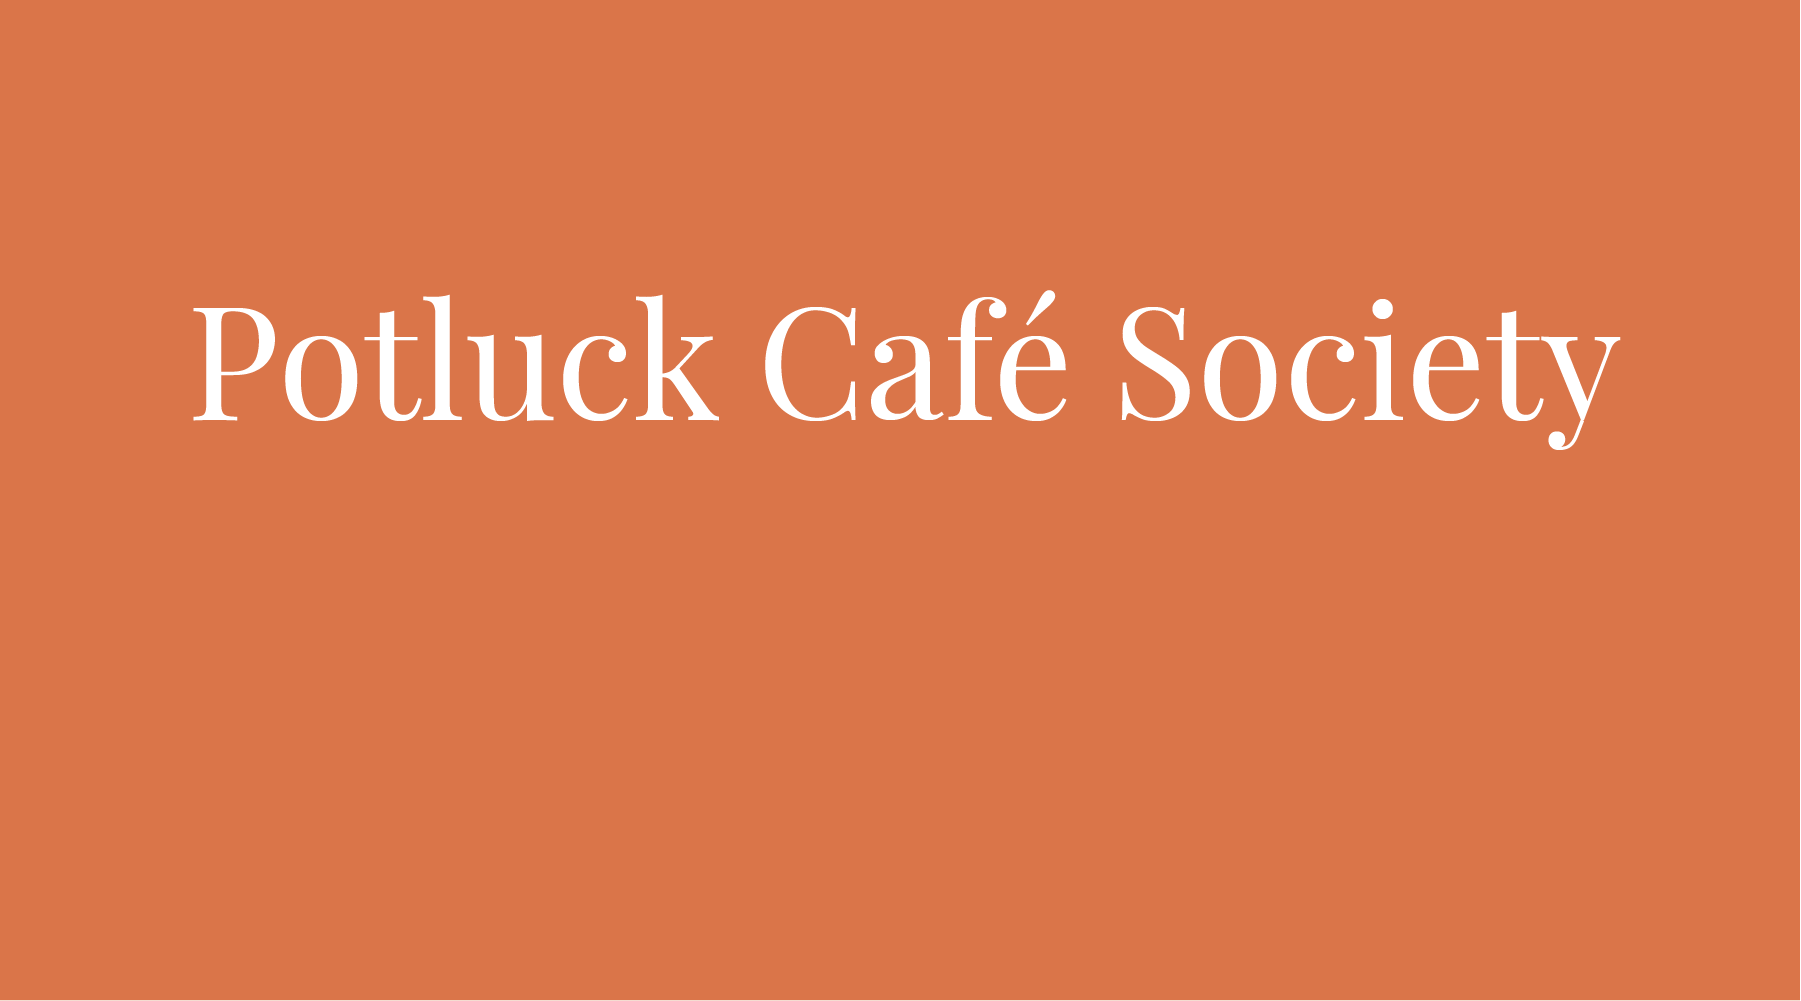 OUR NOVEMBER NON-PROFIT - POTLUCK CAFÉ SOCIETY